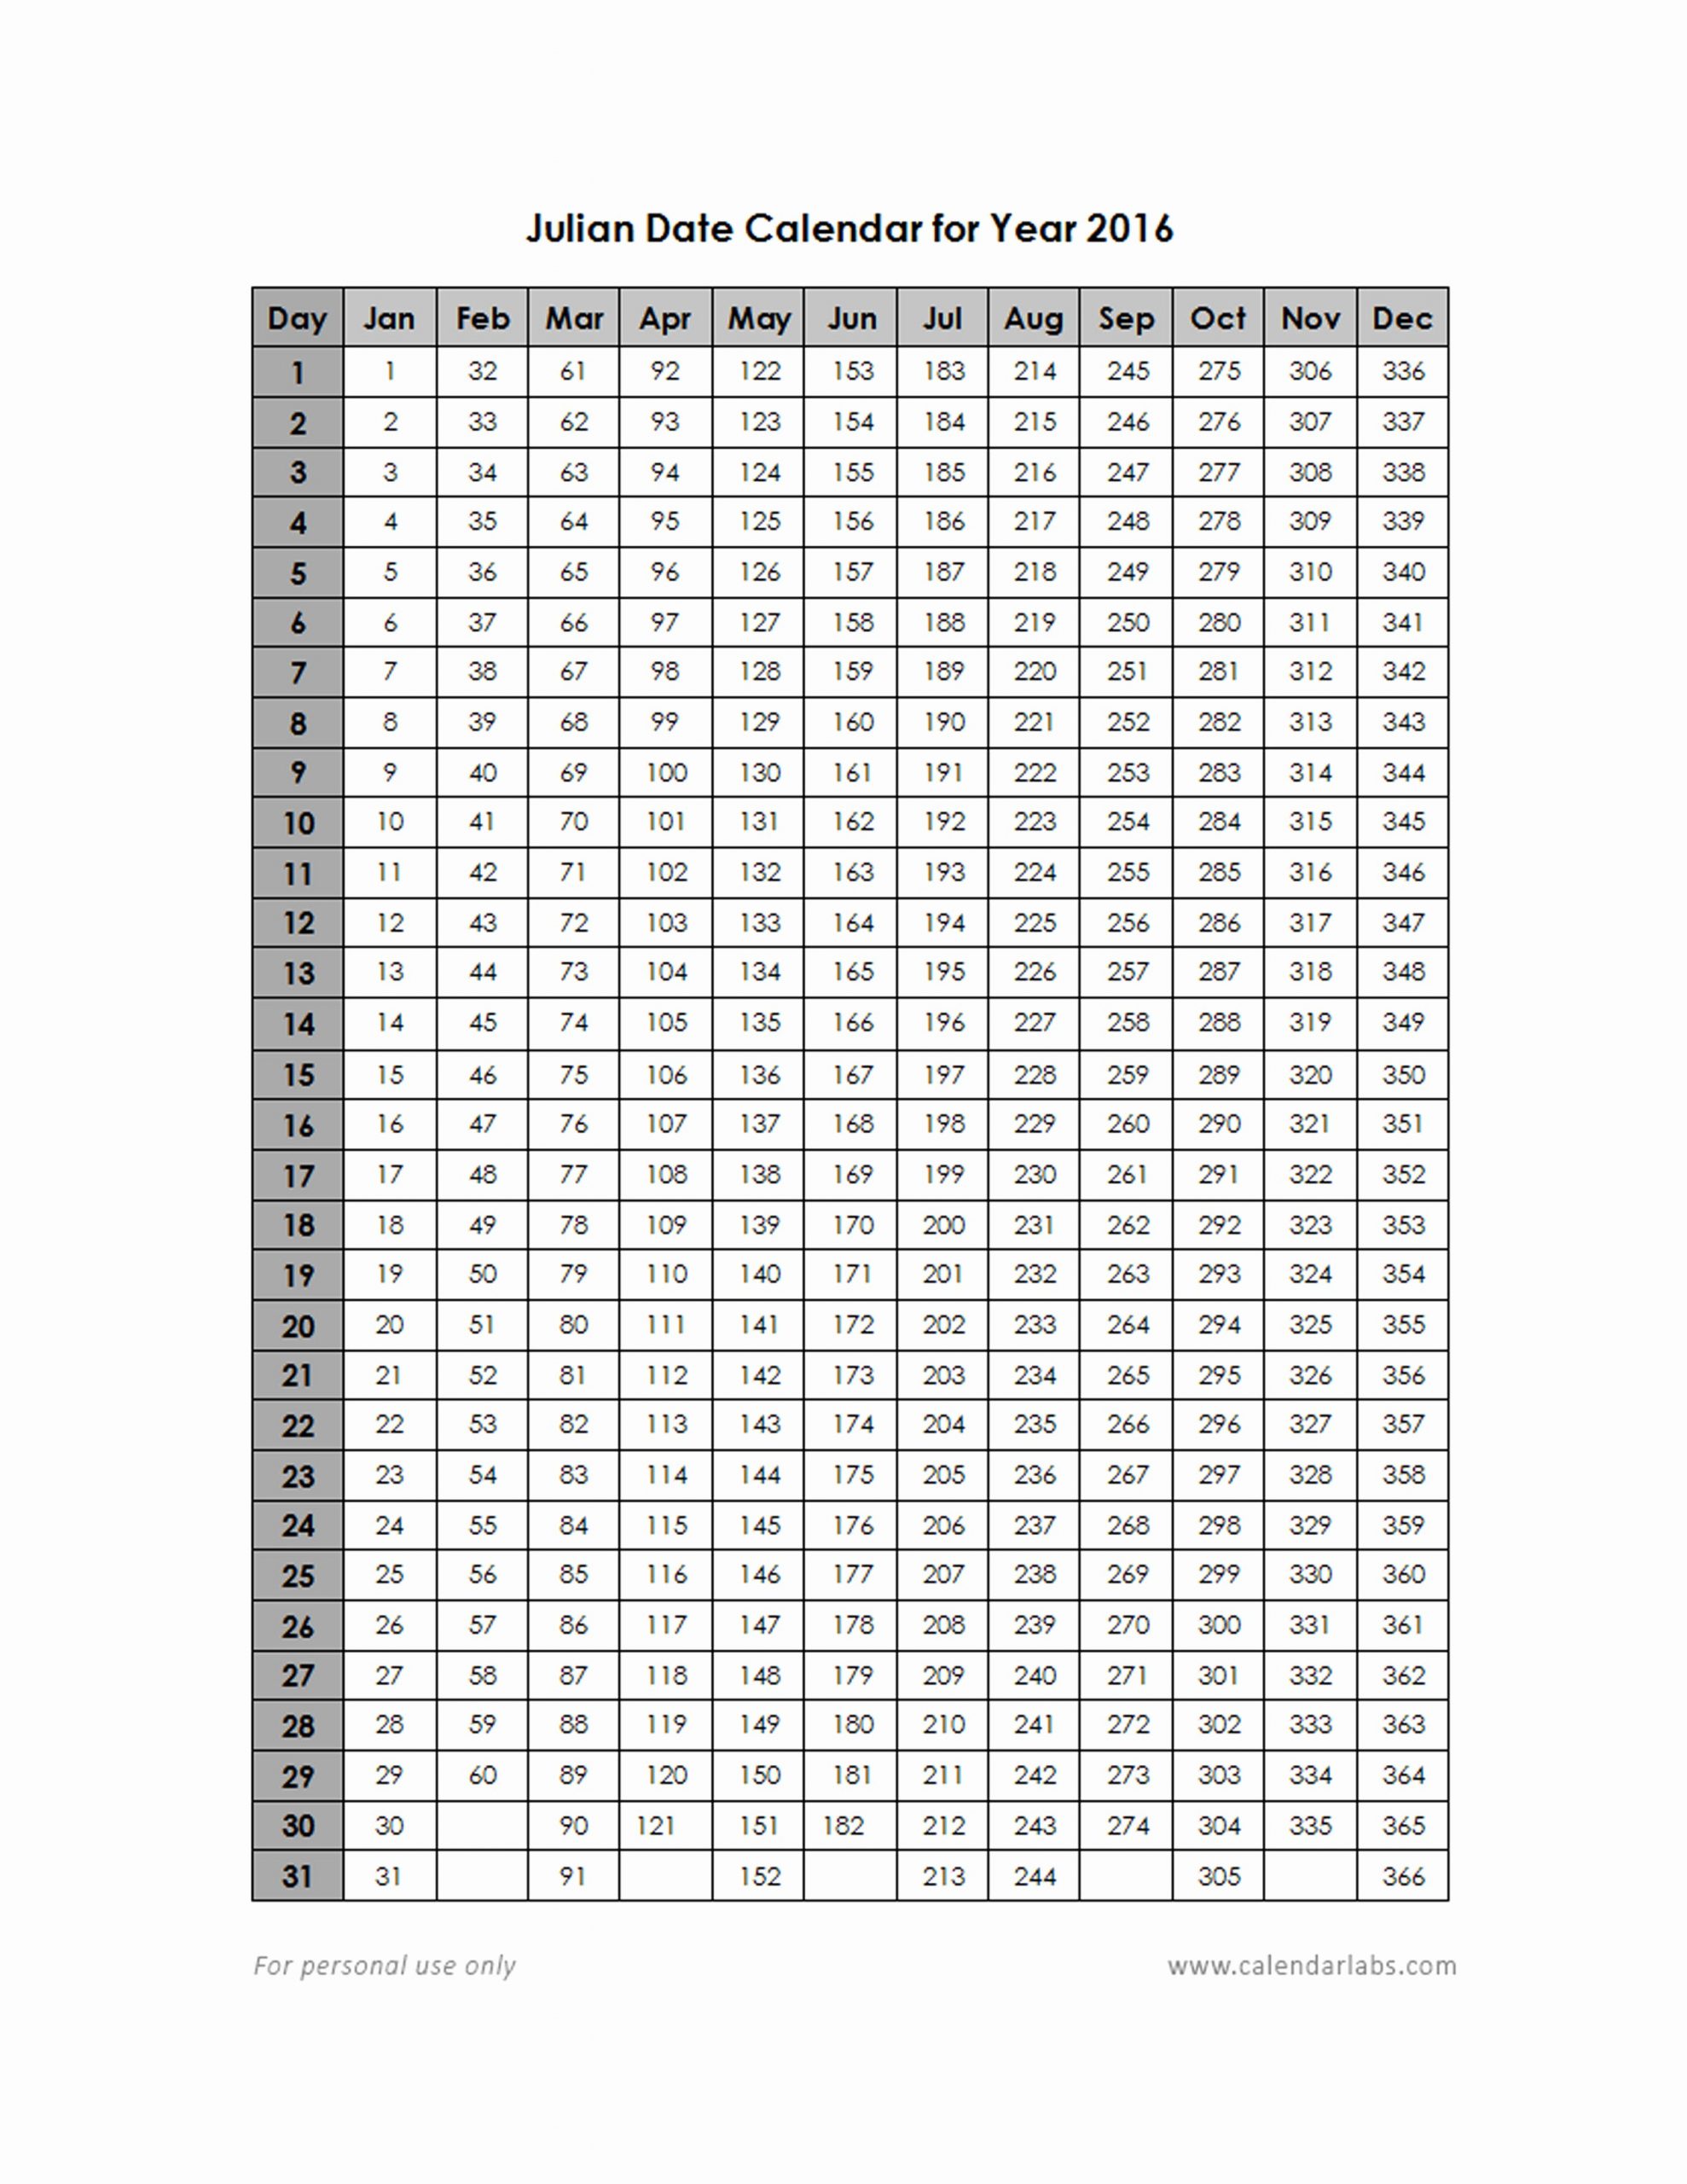 Quadax Julian Date Calendar 2020 | Calendar For Planning